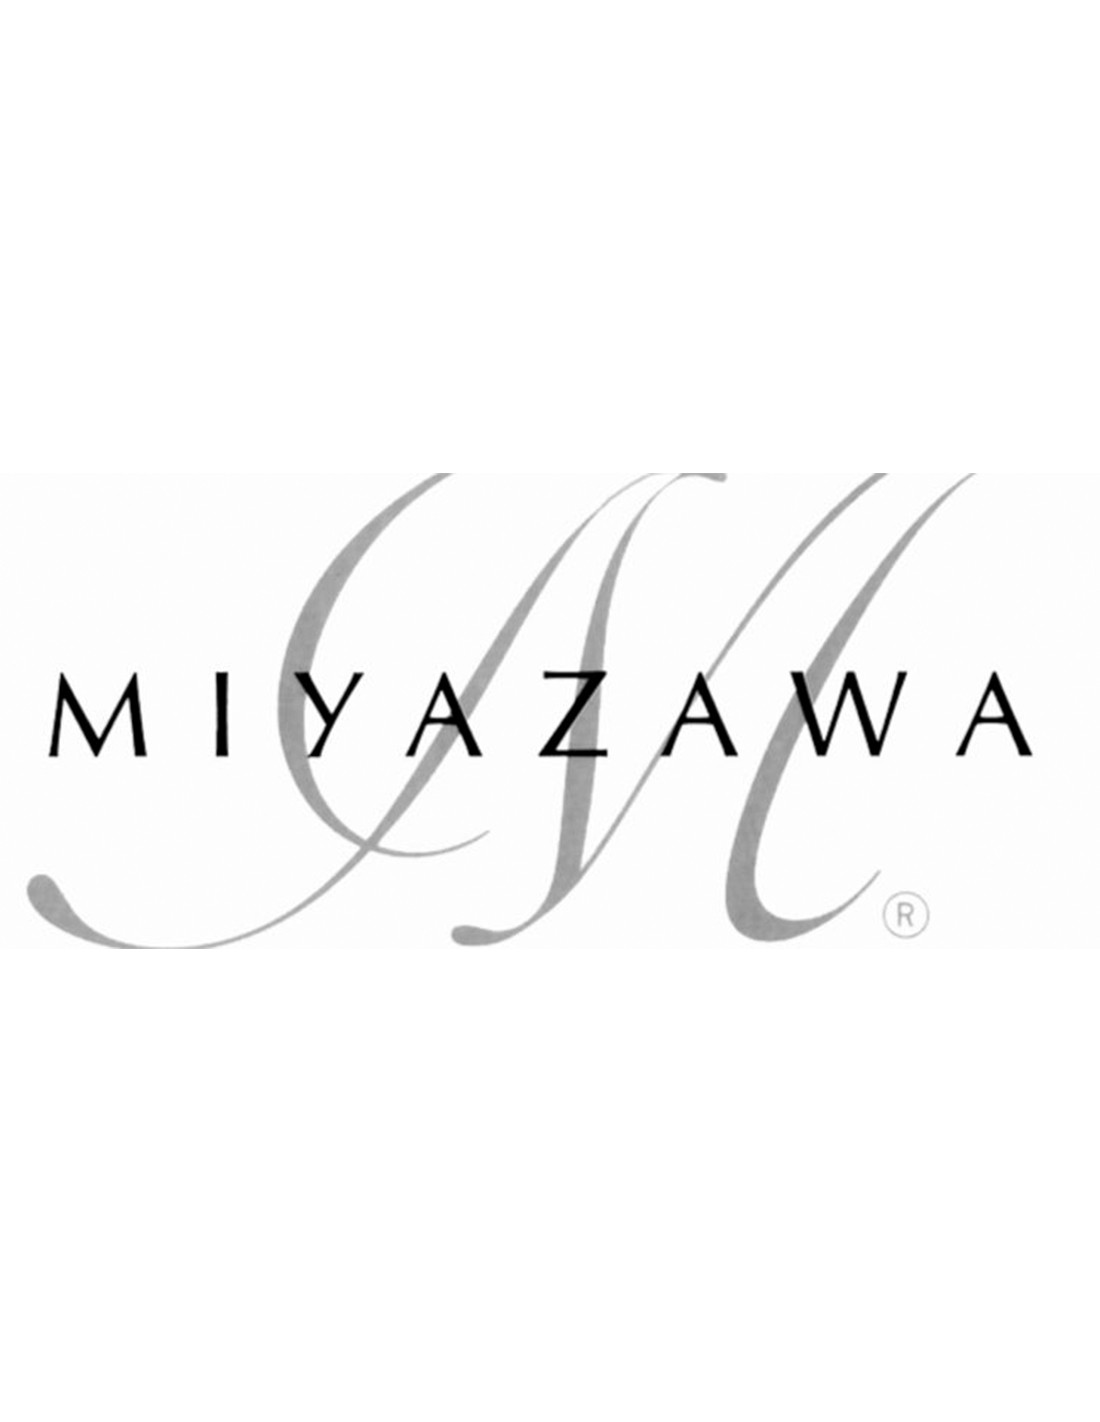 MIYAZAWA